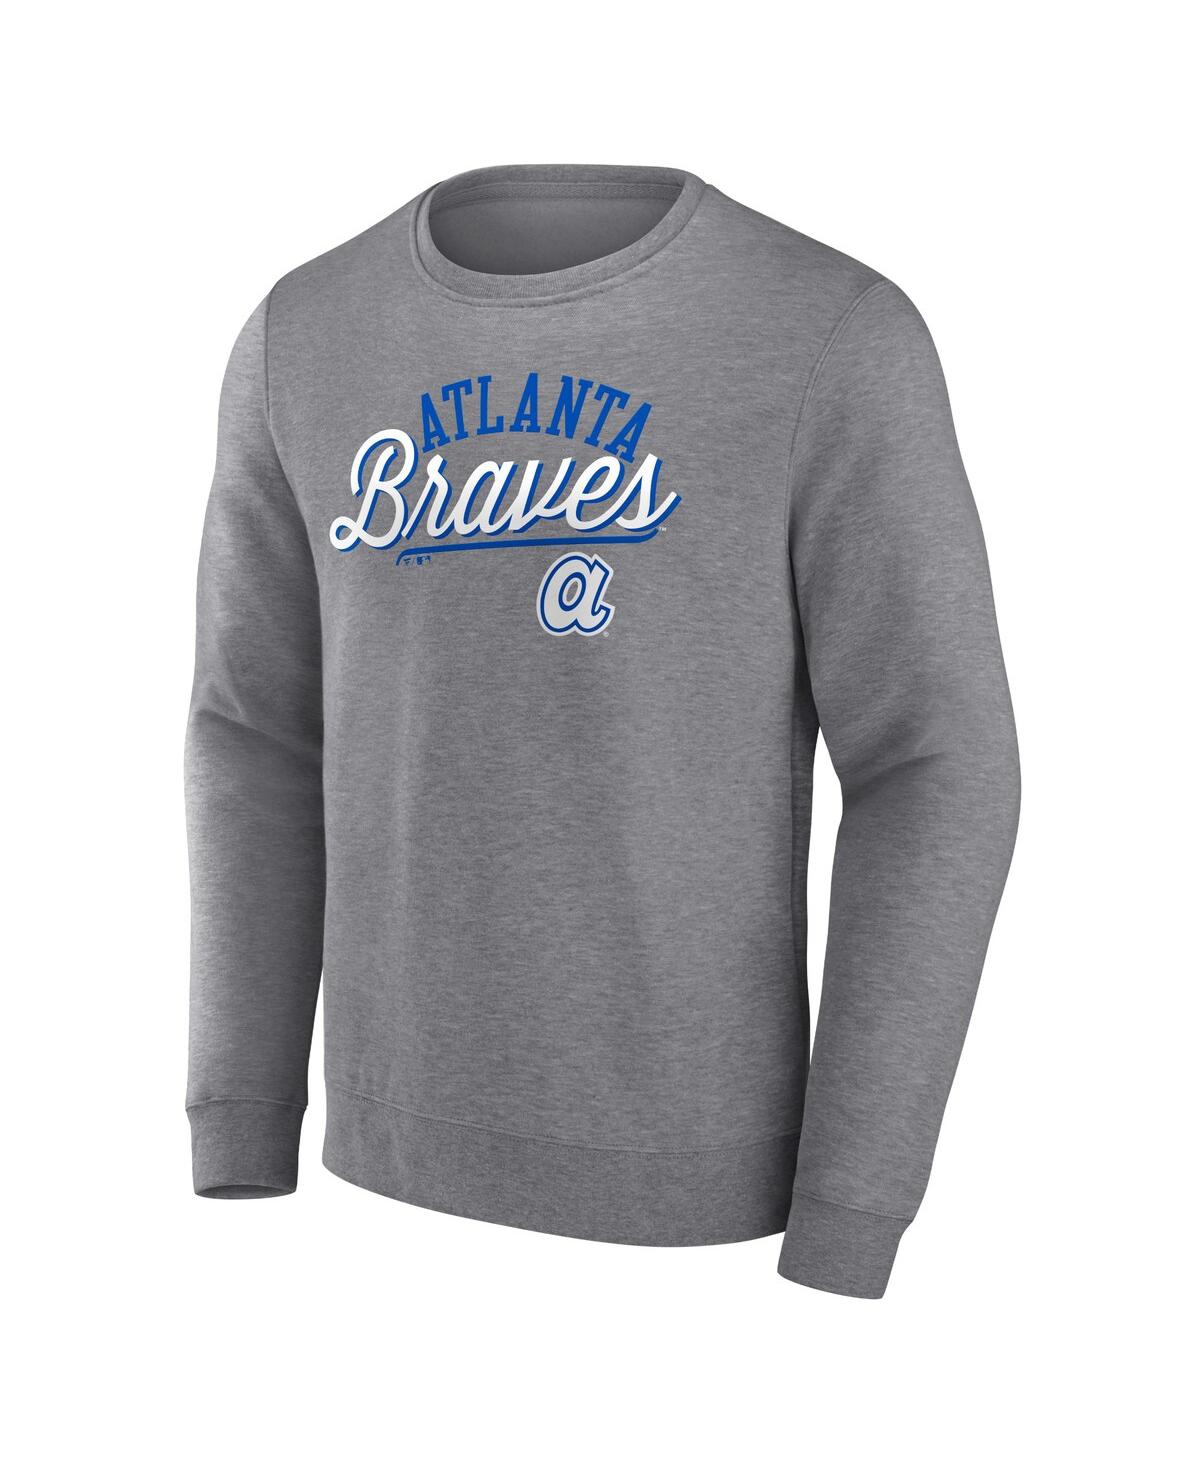 Shop Fanatics Men's Heather Gray  Atlanta Braves Simplicity Pullover Sweatshirt